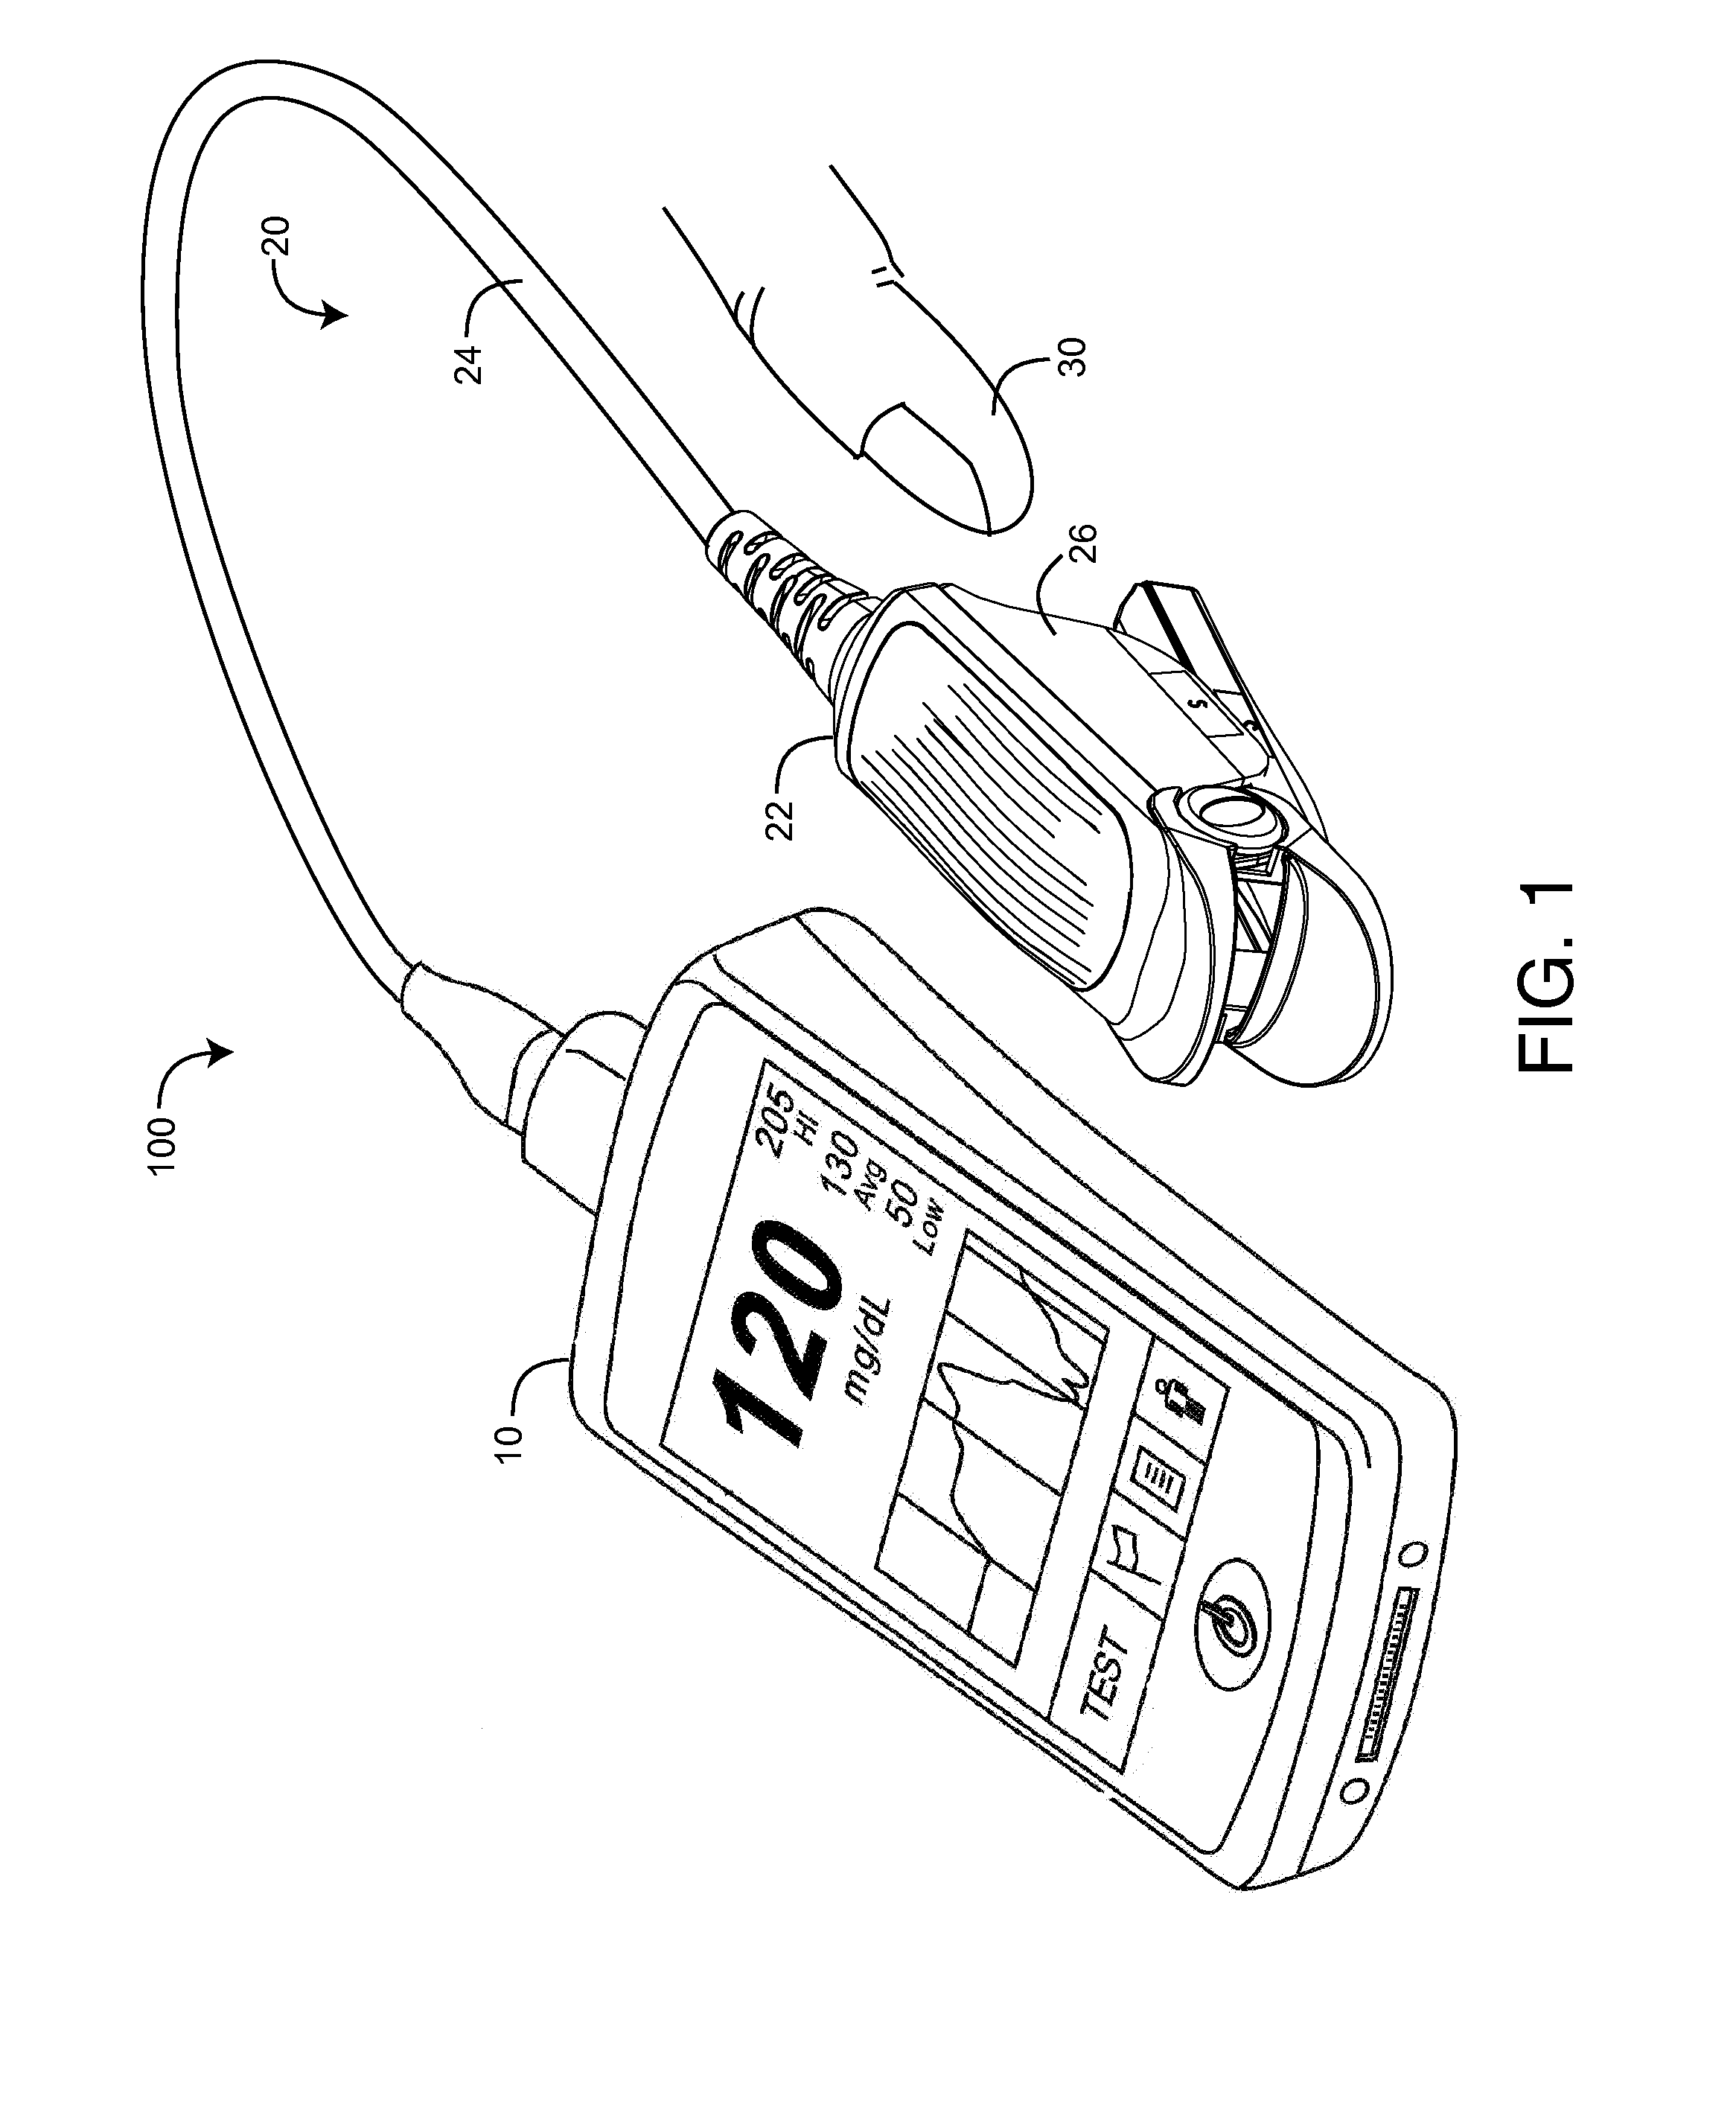 Magnetic-flap optical sensor